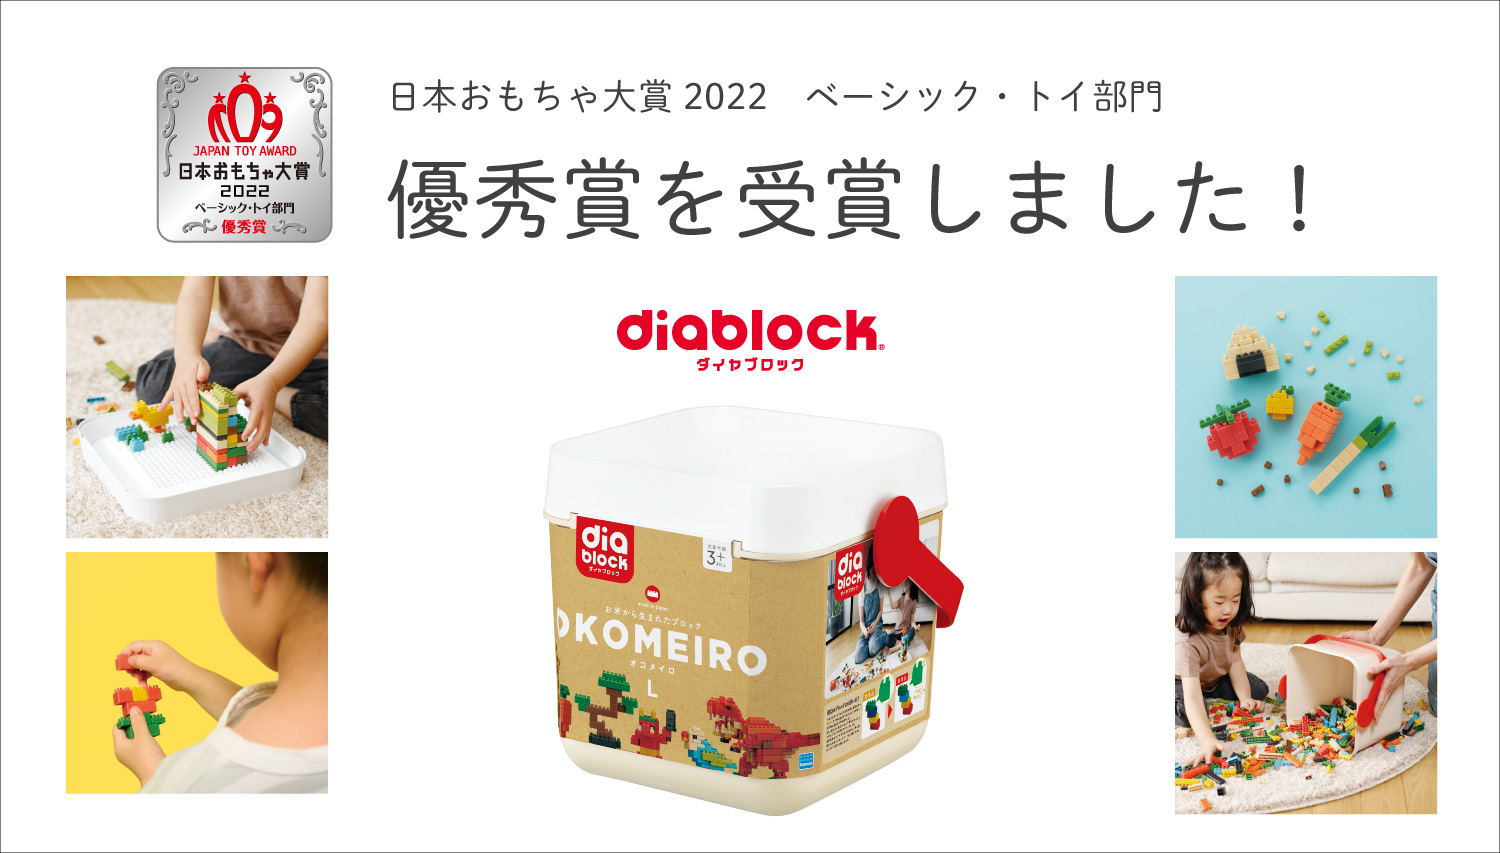 ダイヤブロック 「OKOMEIRO(オコメイロ)L」が「日本おもちゃ大賞2022 